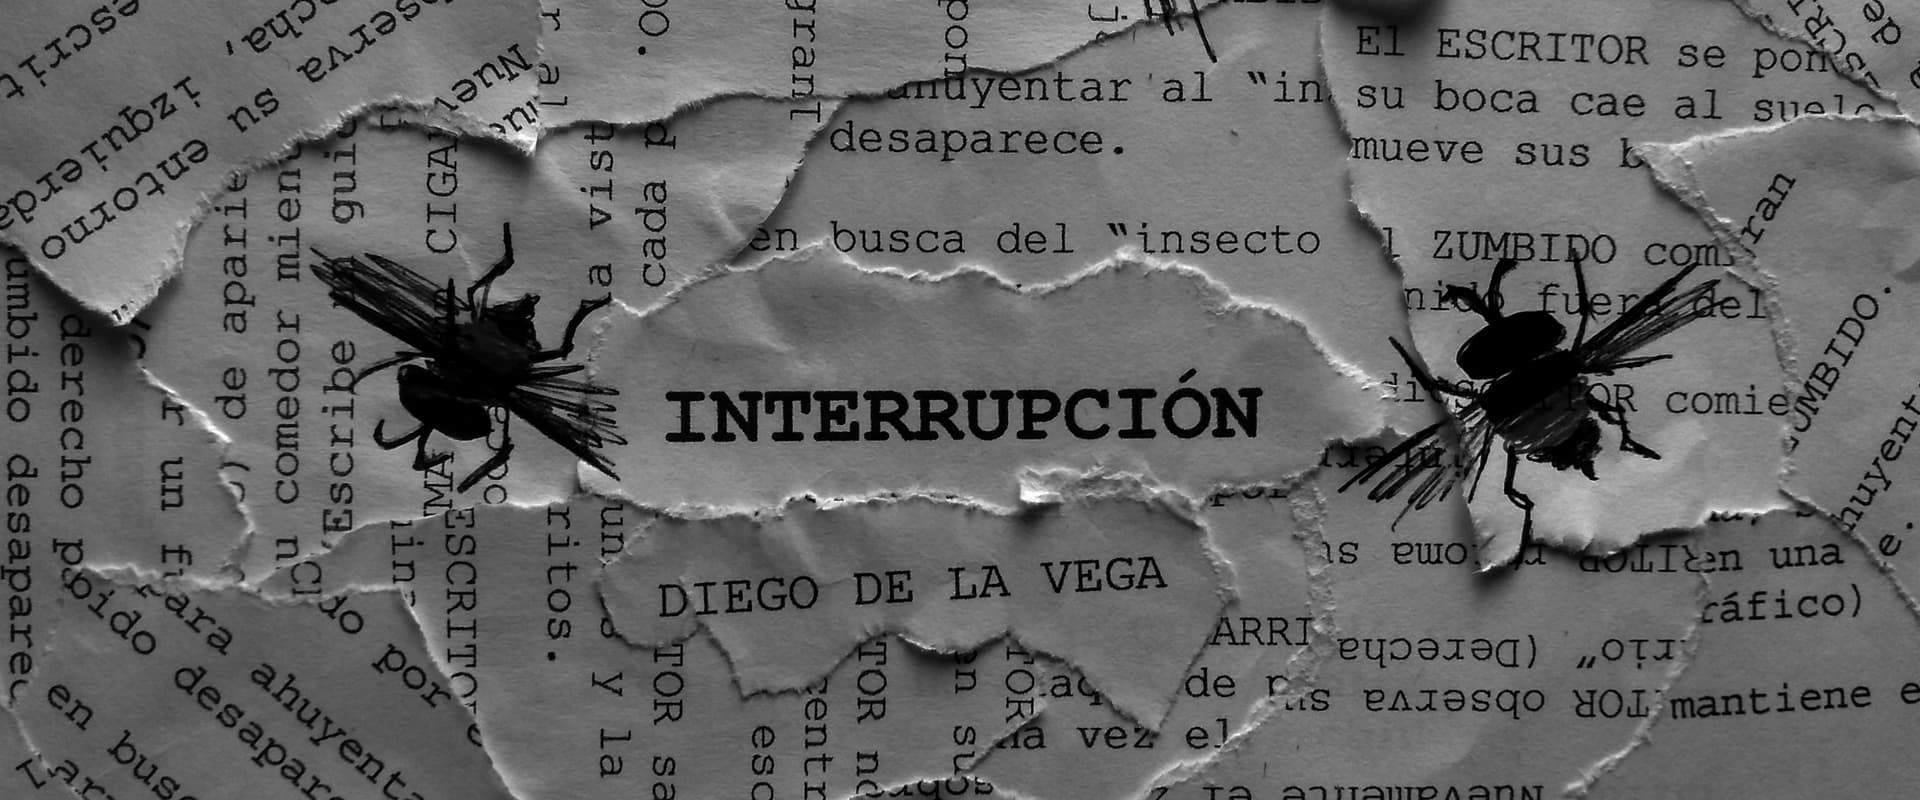 Interruption